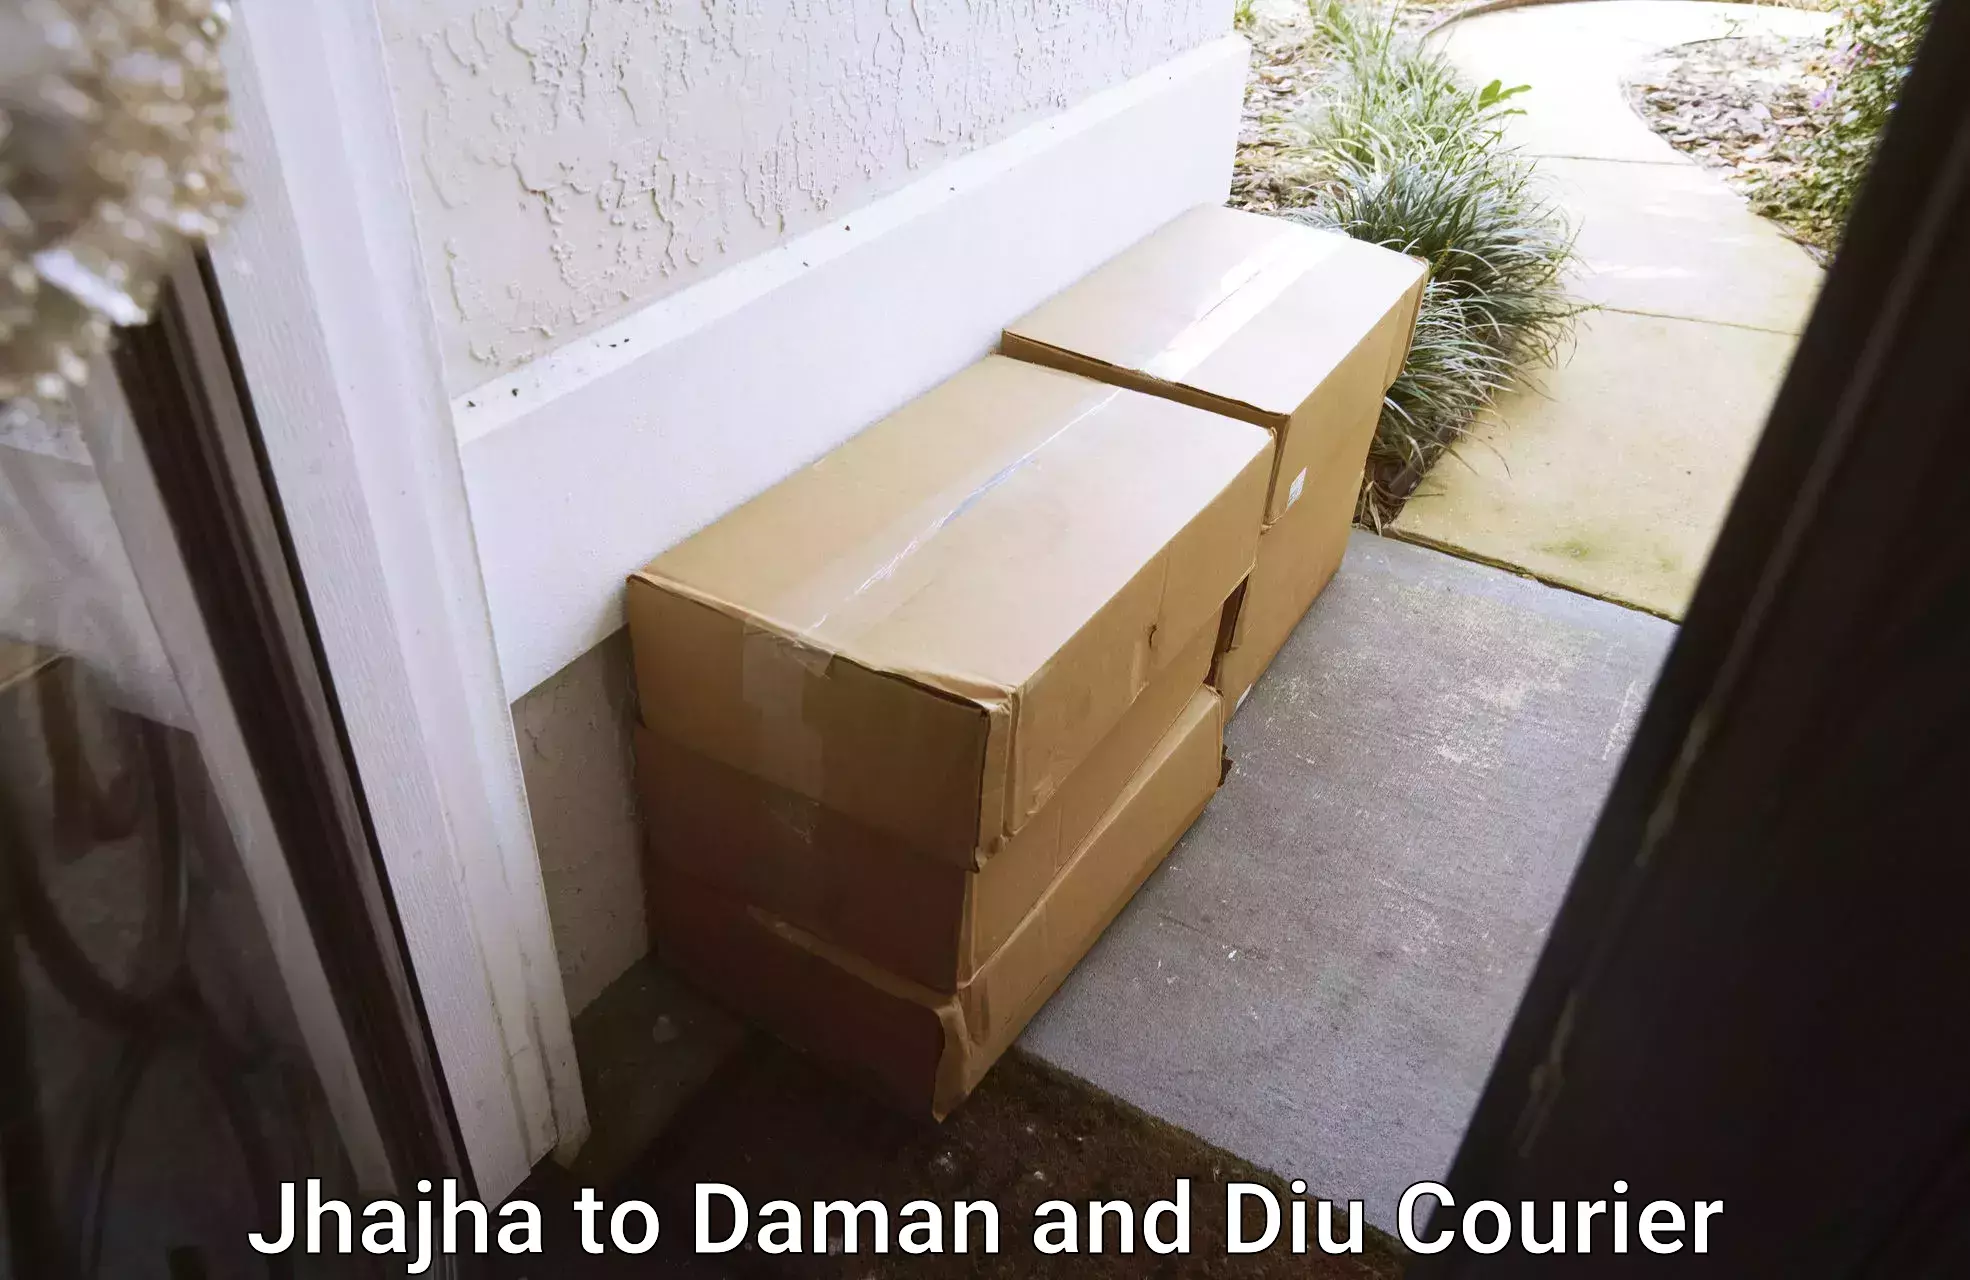 Dependable household movers Jhajha to Daman